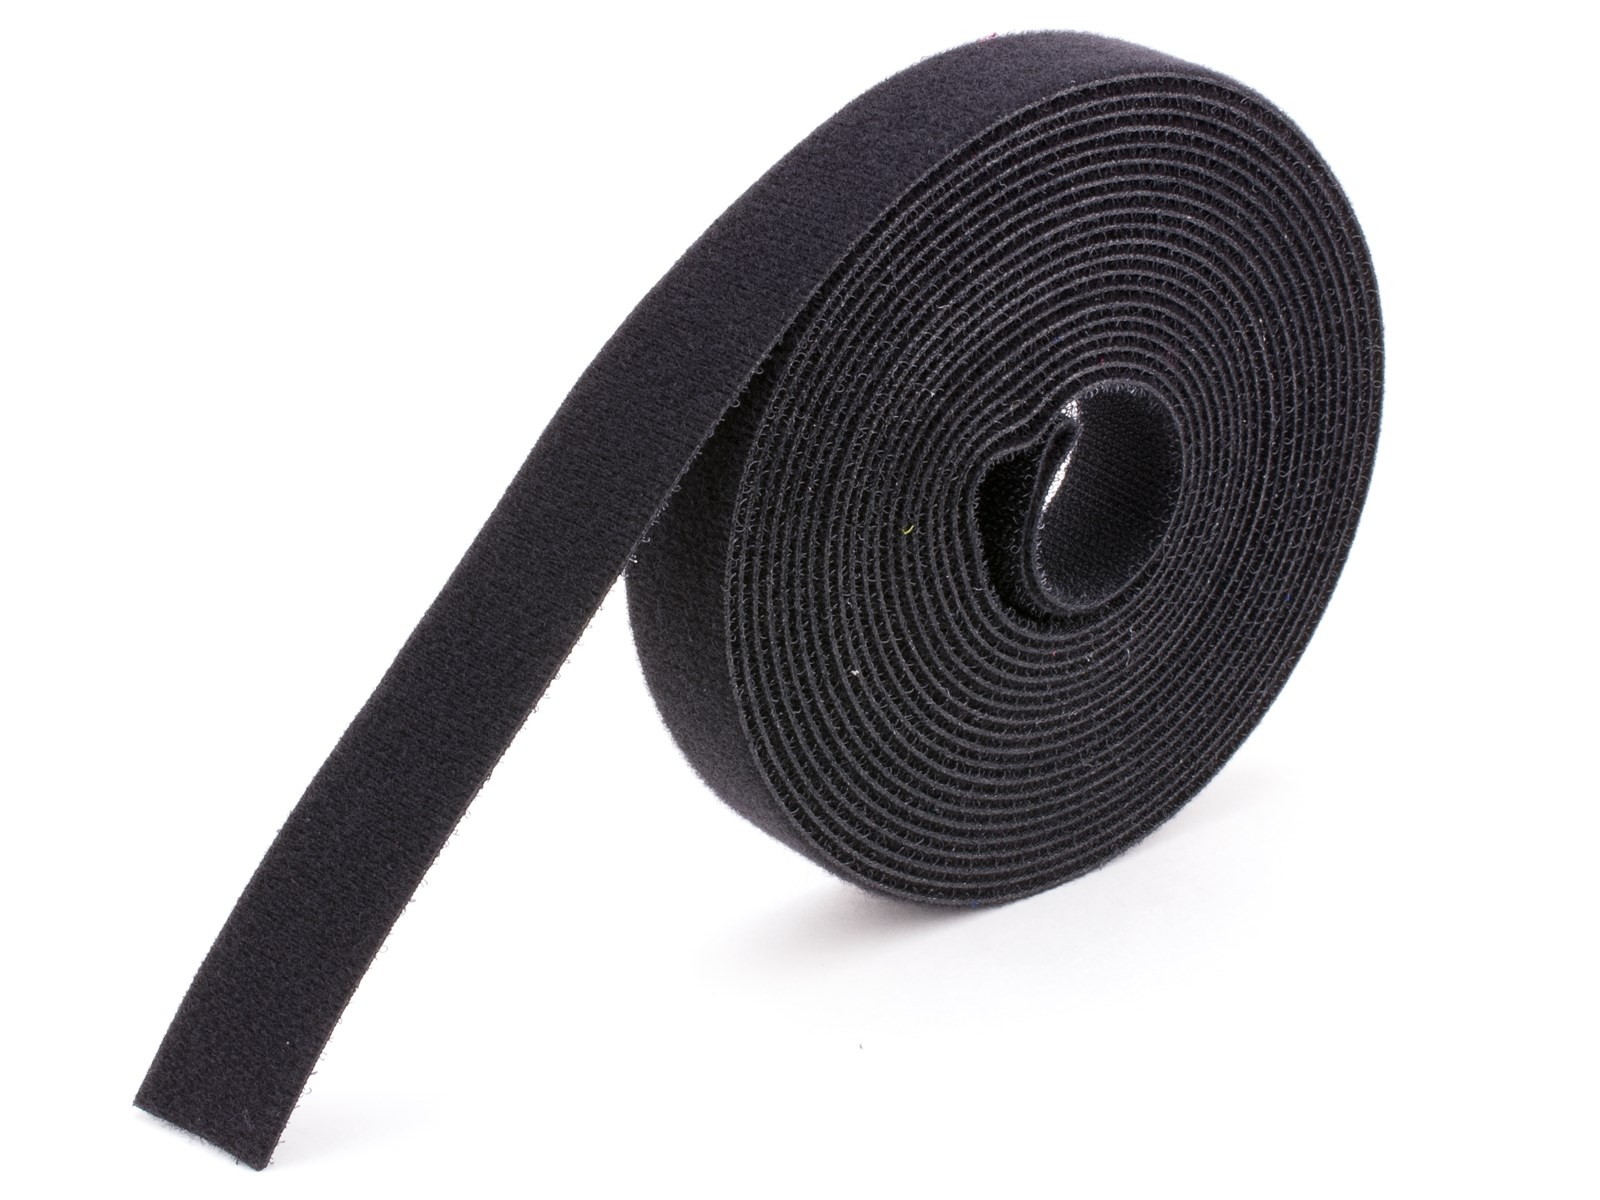 1 Black Adhesive Hook and Loop Tape, 5 Yards - Secure™ Cable Ties